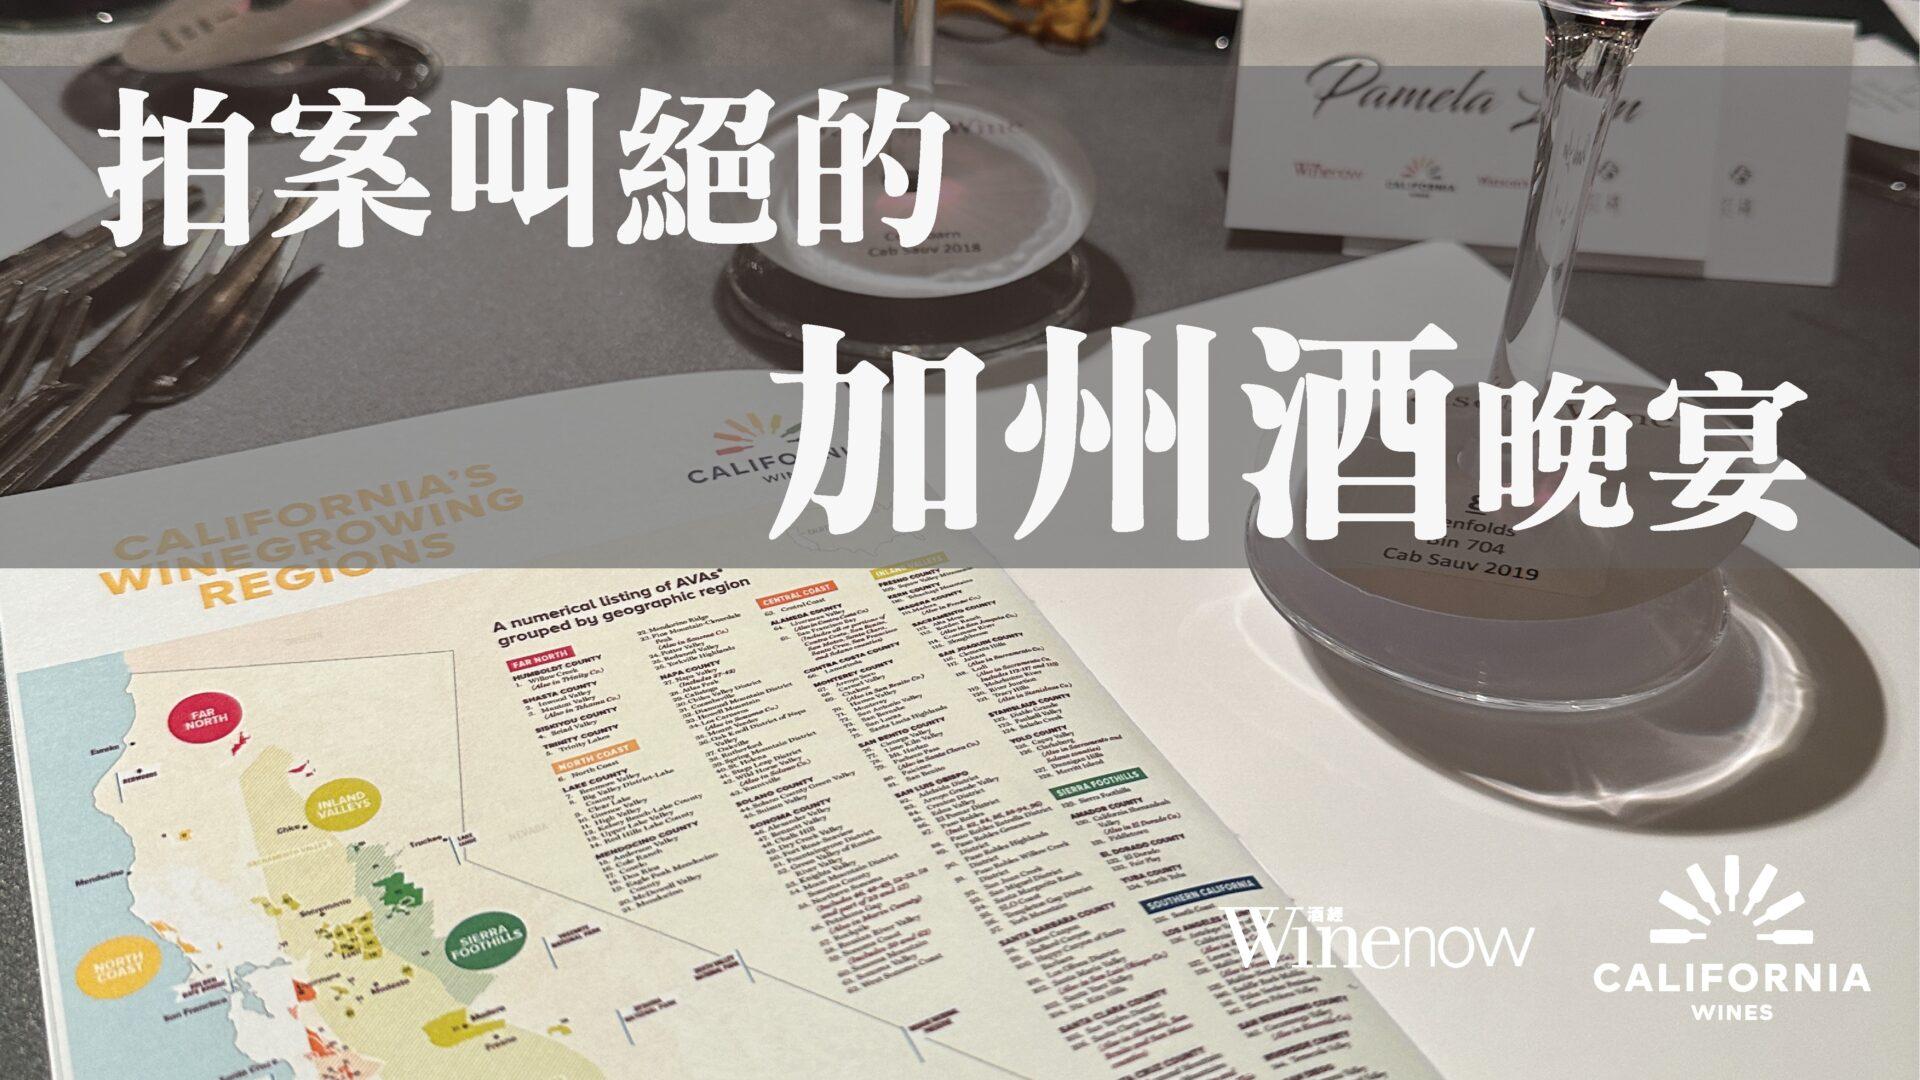 拍案叫絕的紅棉加州酒晚宴 - WineNow HK 專欄文章